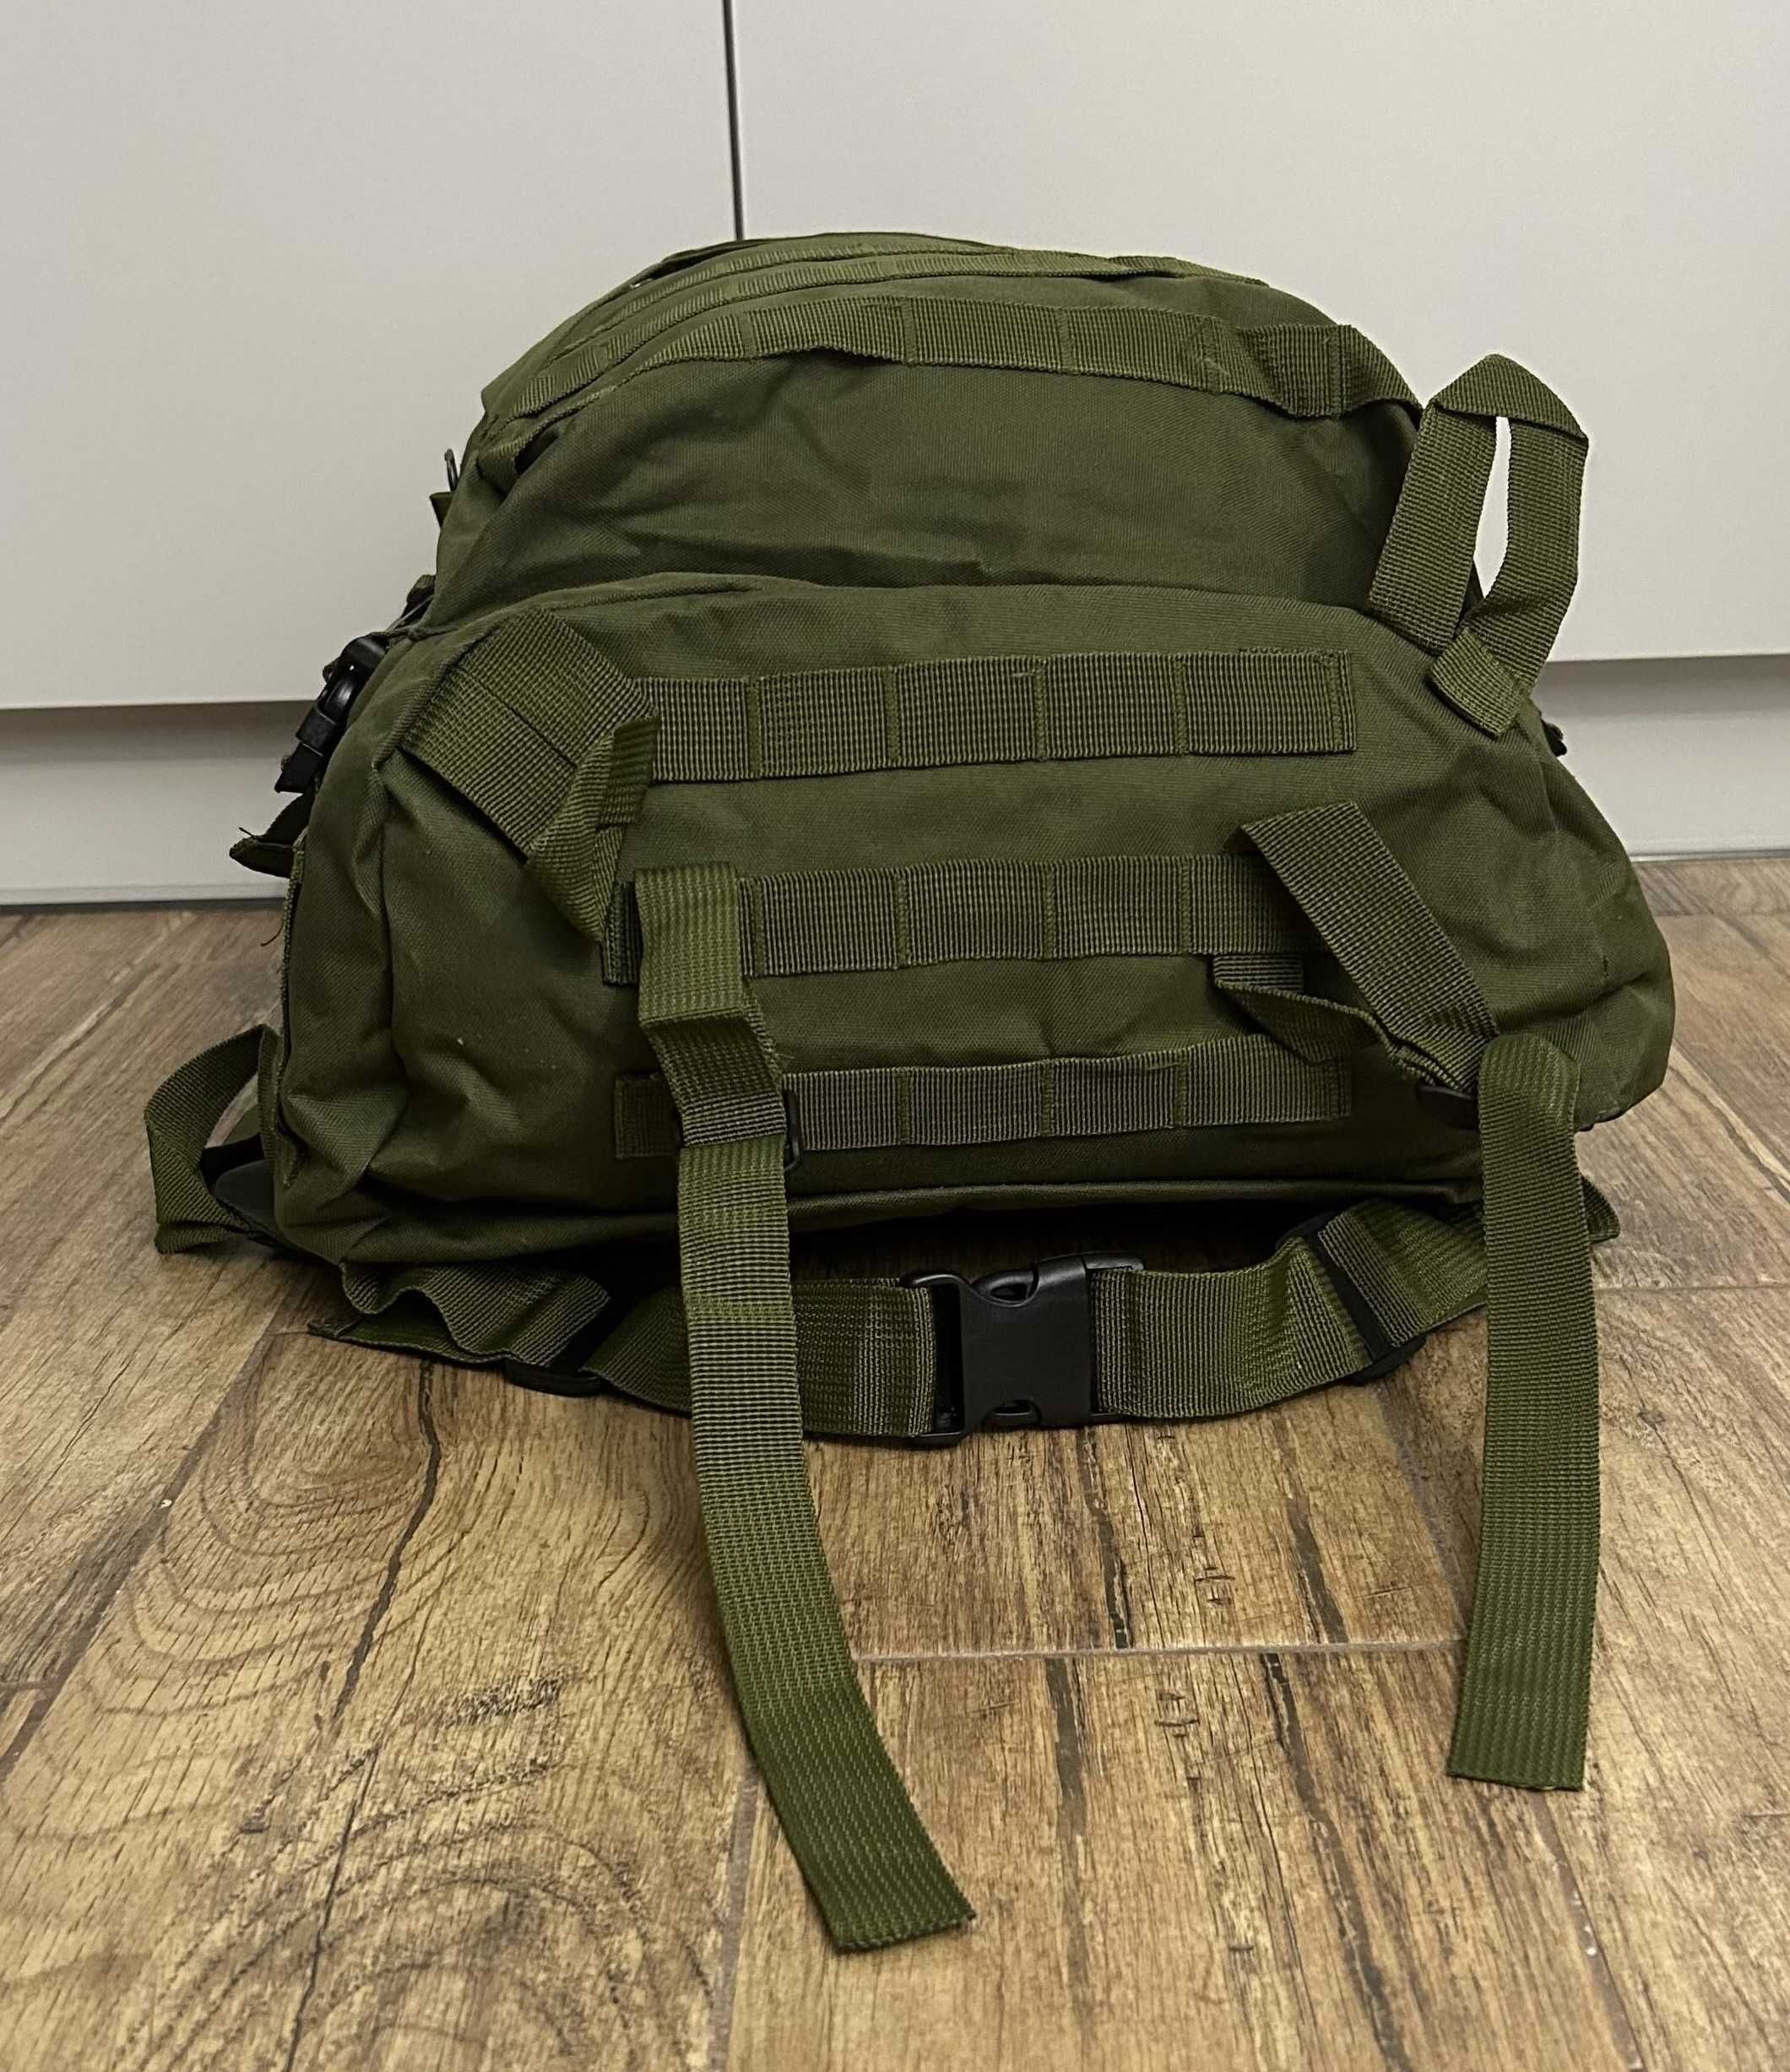 Plecak wojskowy zielony duży 40L + pokrowiec przeciwdeszczowy